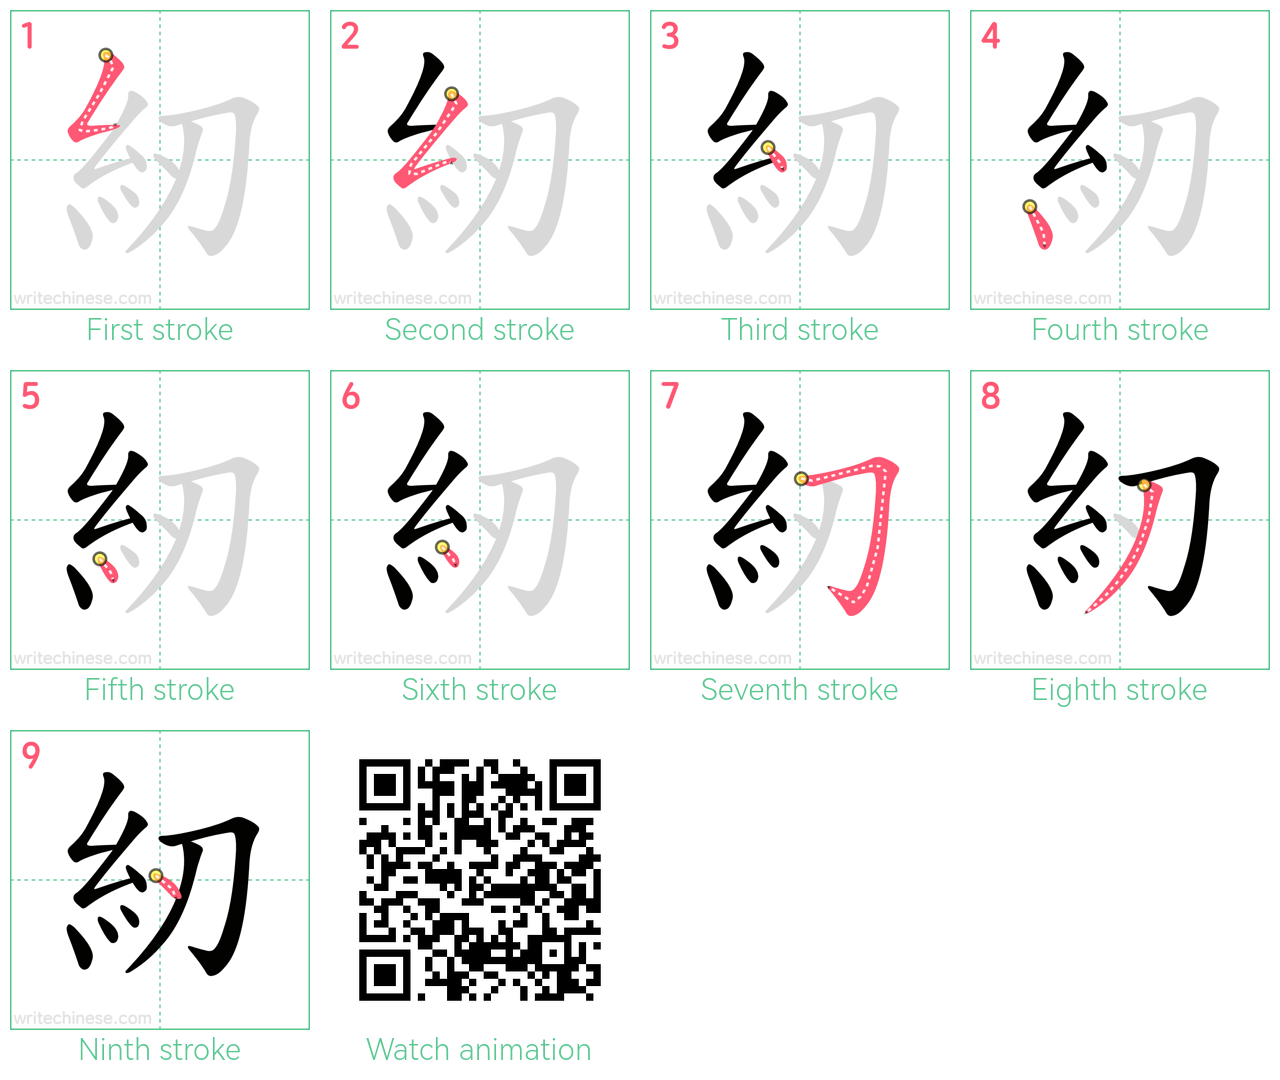 紉 step-by-step stroke order diagrams